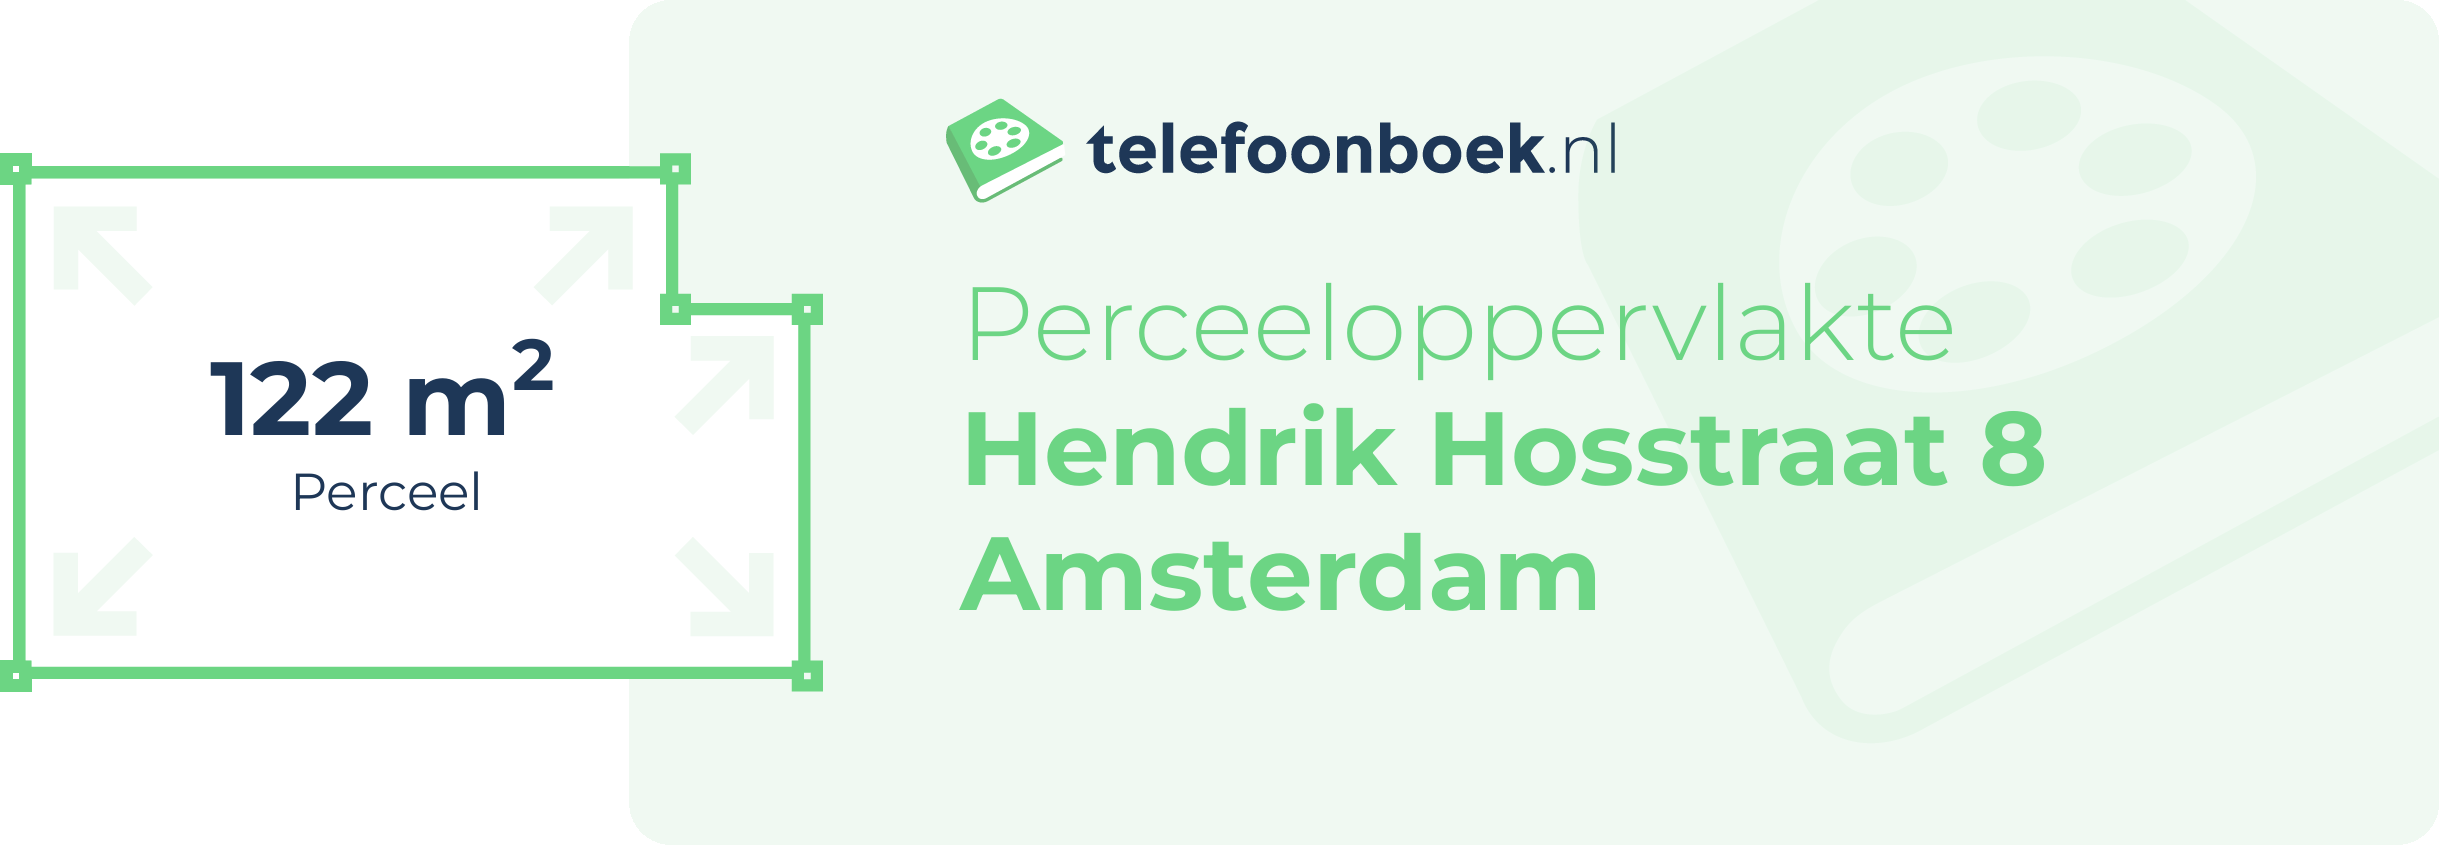 Perceeloppervlakte Hendrik Hosstraat 8 Amsterdam